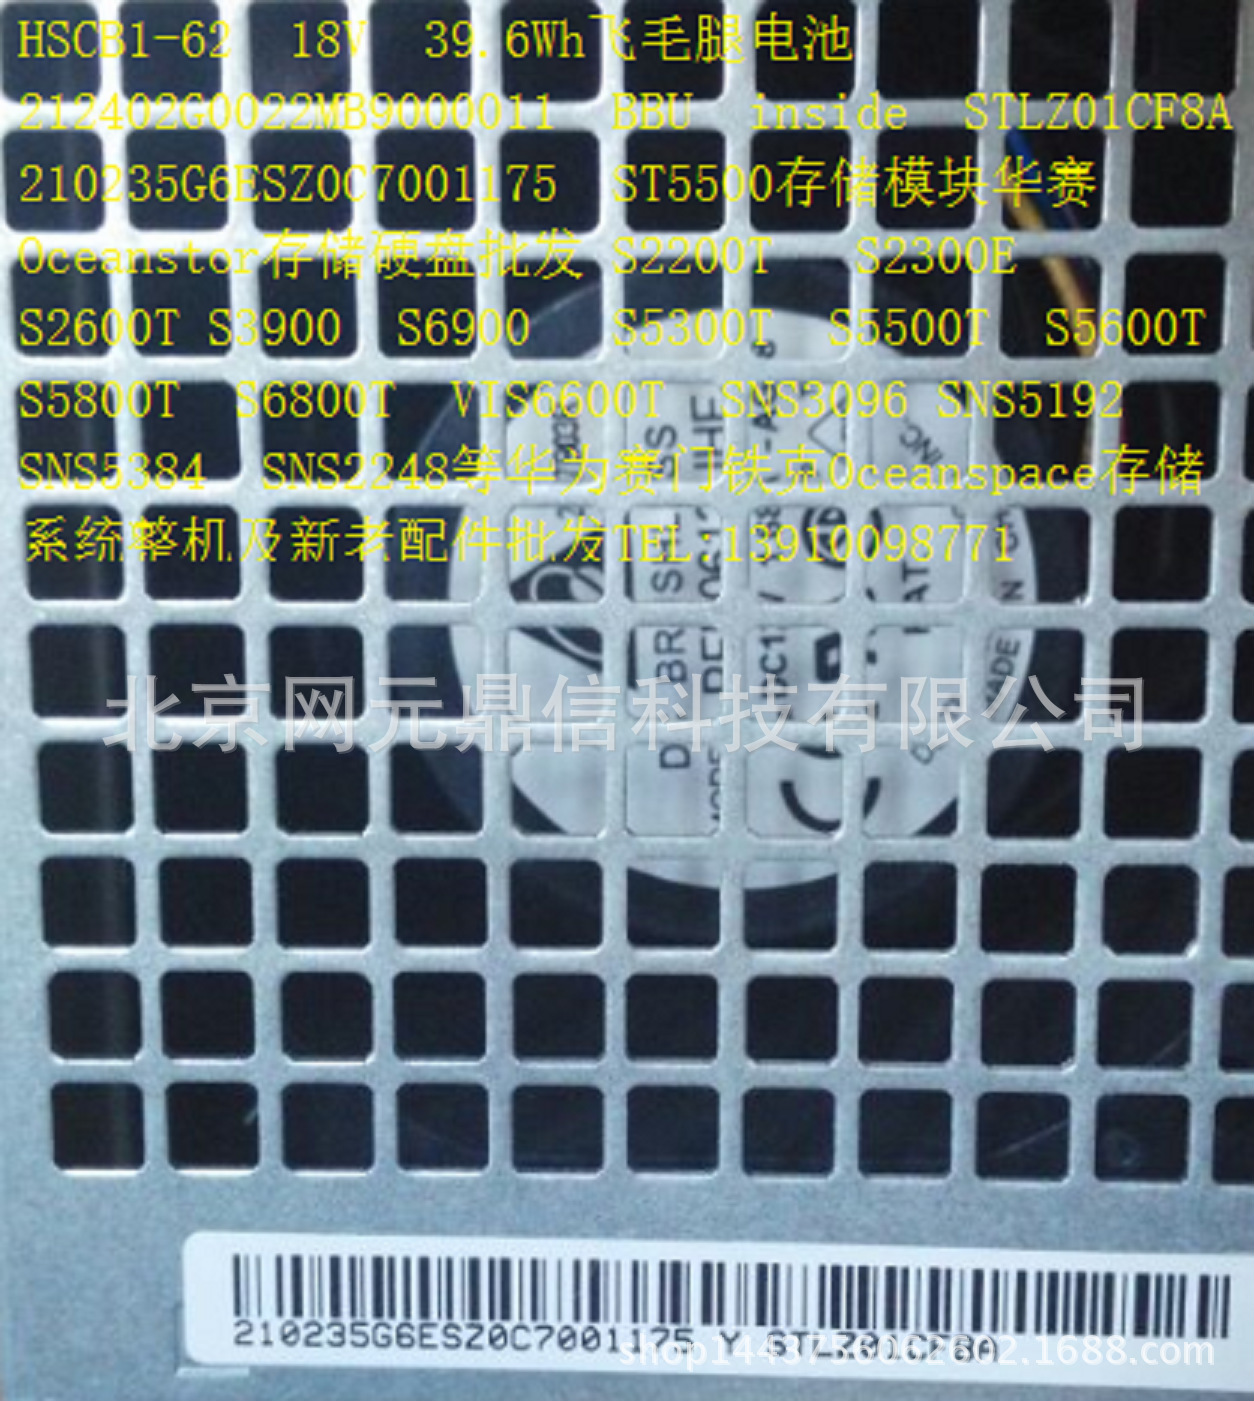 STLZ01CF8A S5500T磁盘模块